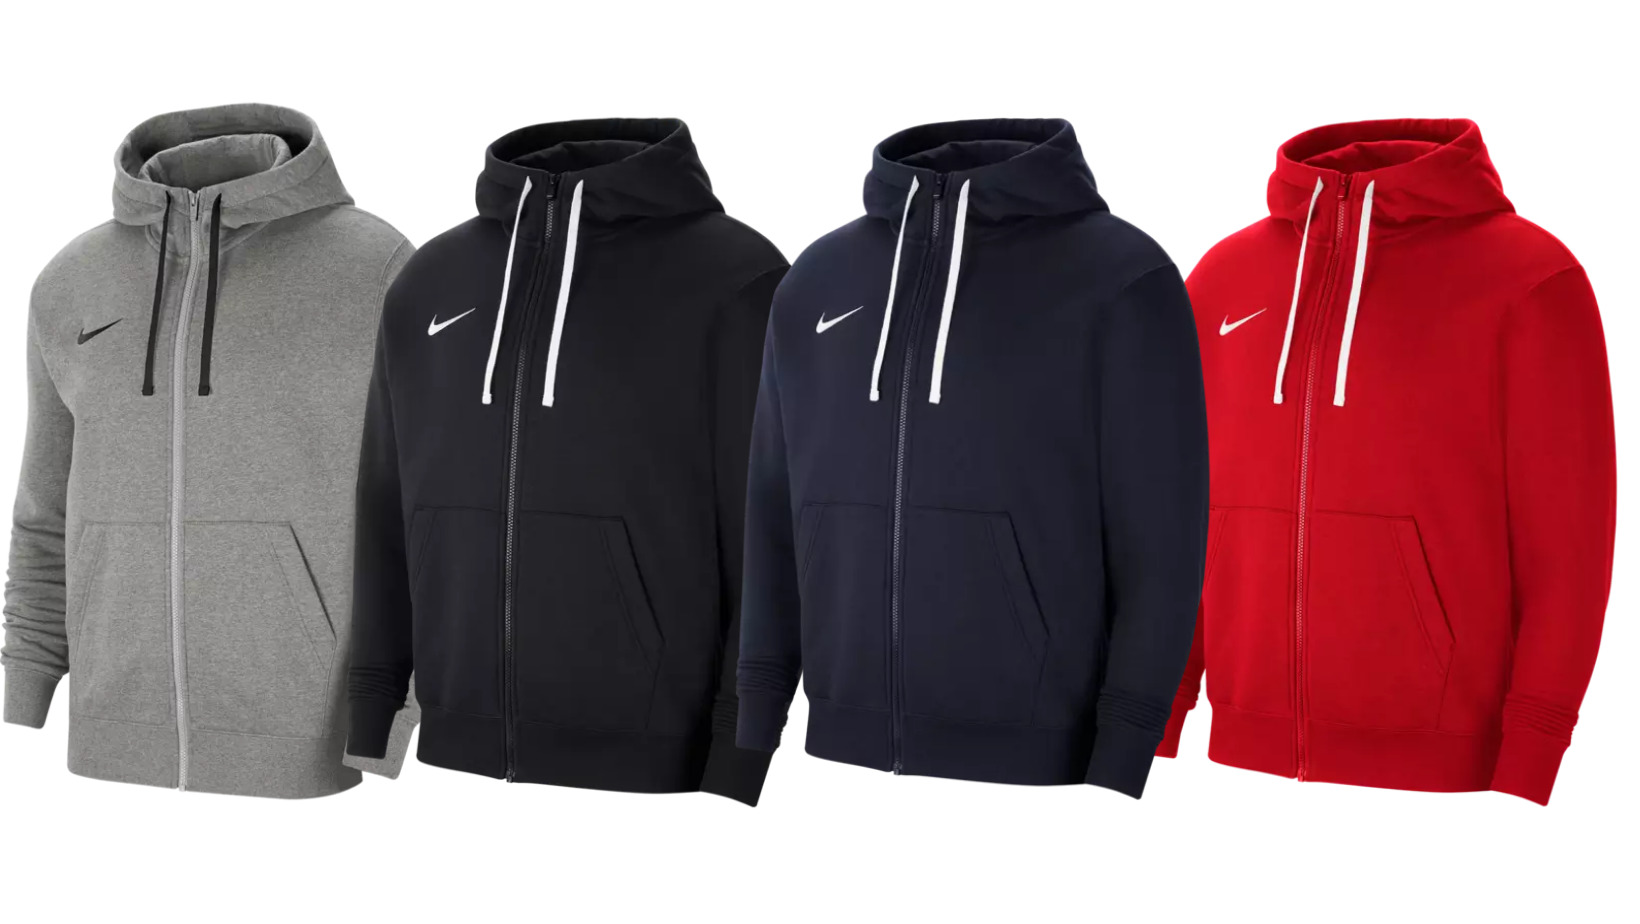 Nike Kapuzenjacke Team Park 20 für 29,99€ (statt 42€) - in 5 Farben